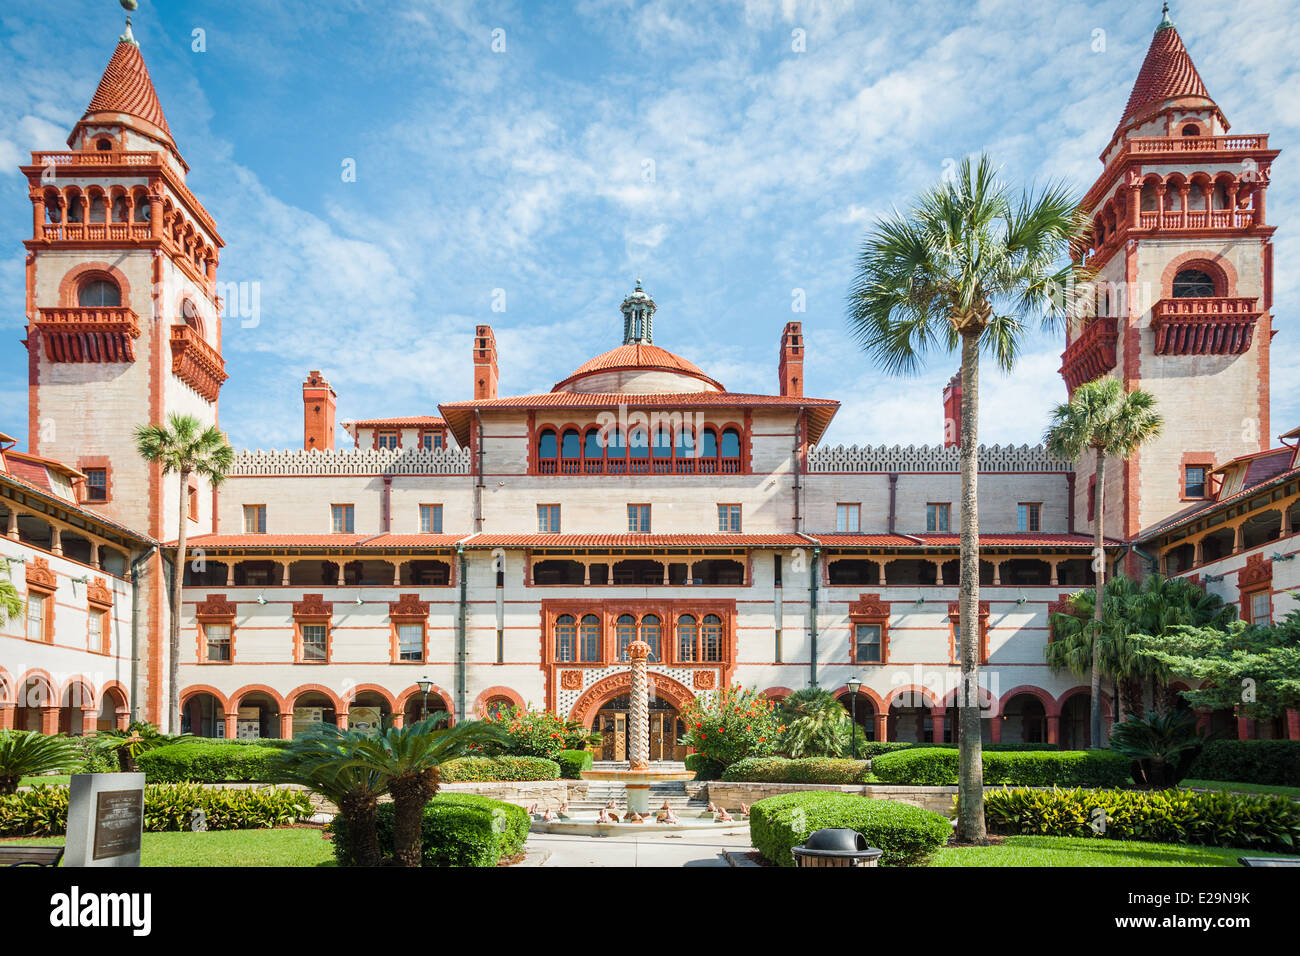 Innenhof des majestätischen Flagler College (ehemals Ponce de Leon Hotel) in St. Augustine, Florida, USA. Stockfoto